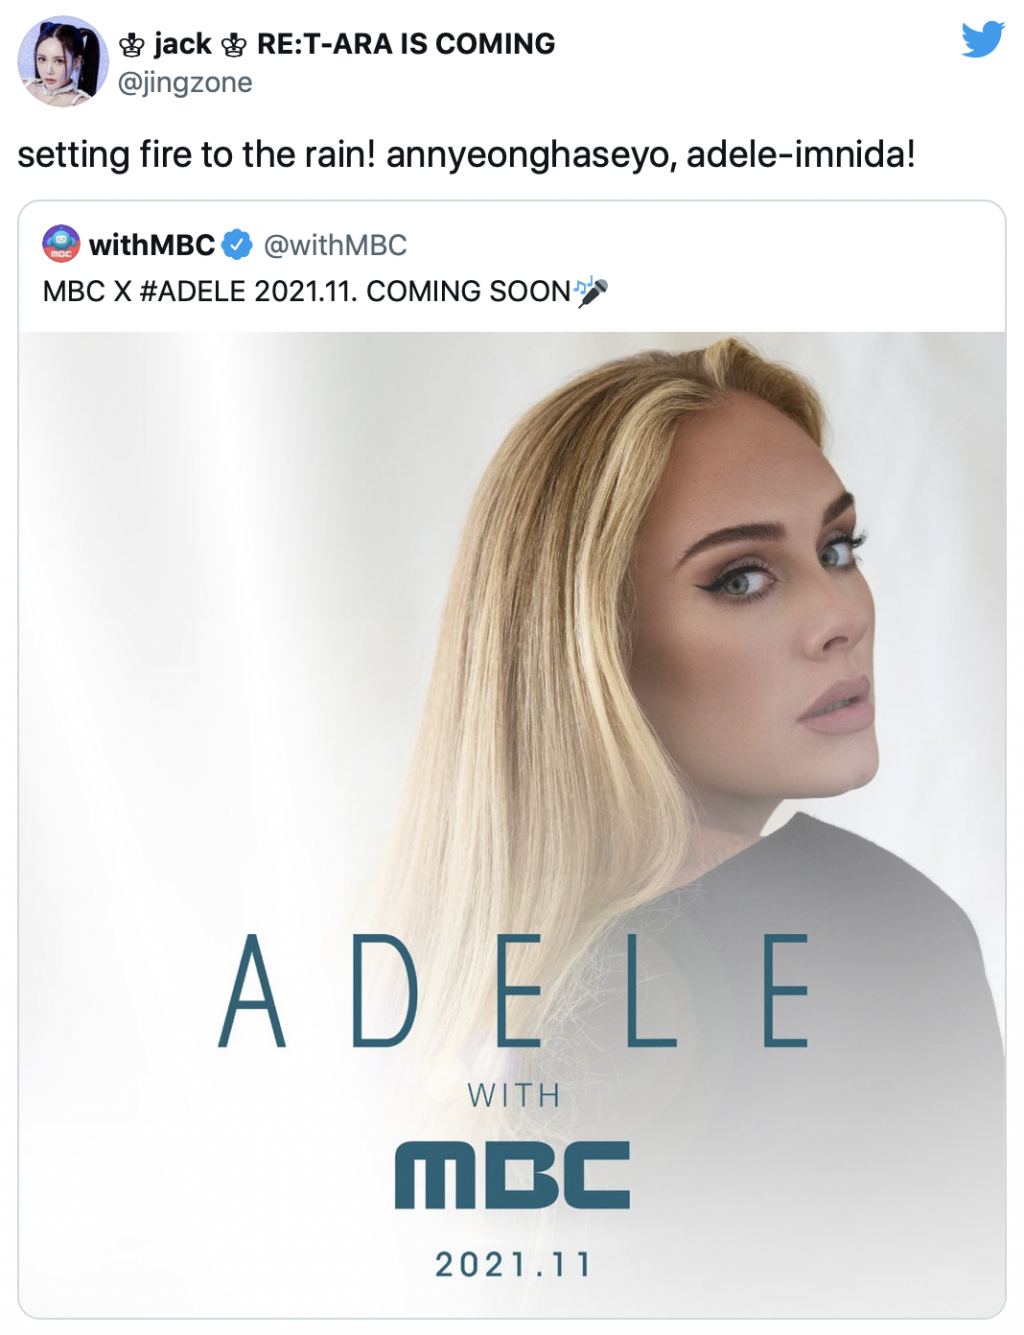 MBC thông báo hợp tác với Adele và phản ứng hài hước của netizen